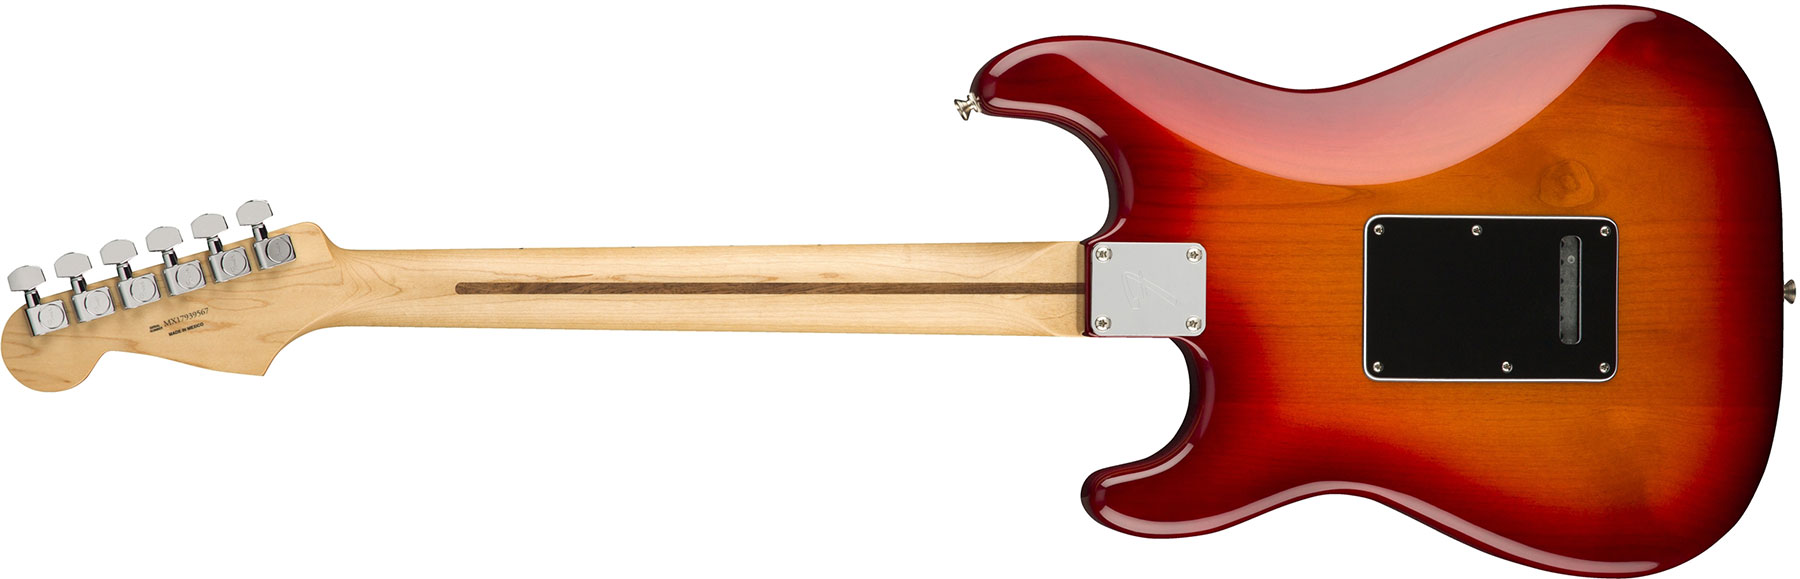 Fender Strat Player Plus Top Mex Hss Mn - Aged Cherry Burst - Elektrische gitaar in Str-vorm - Variation 1